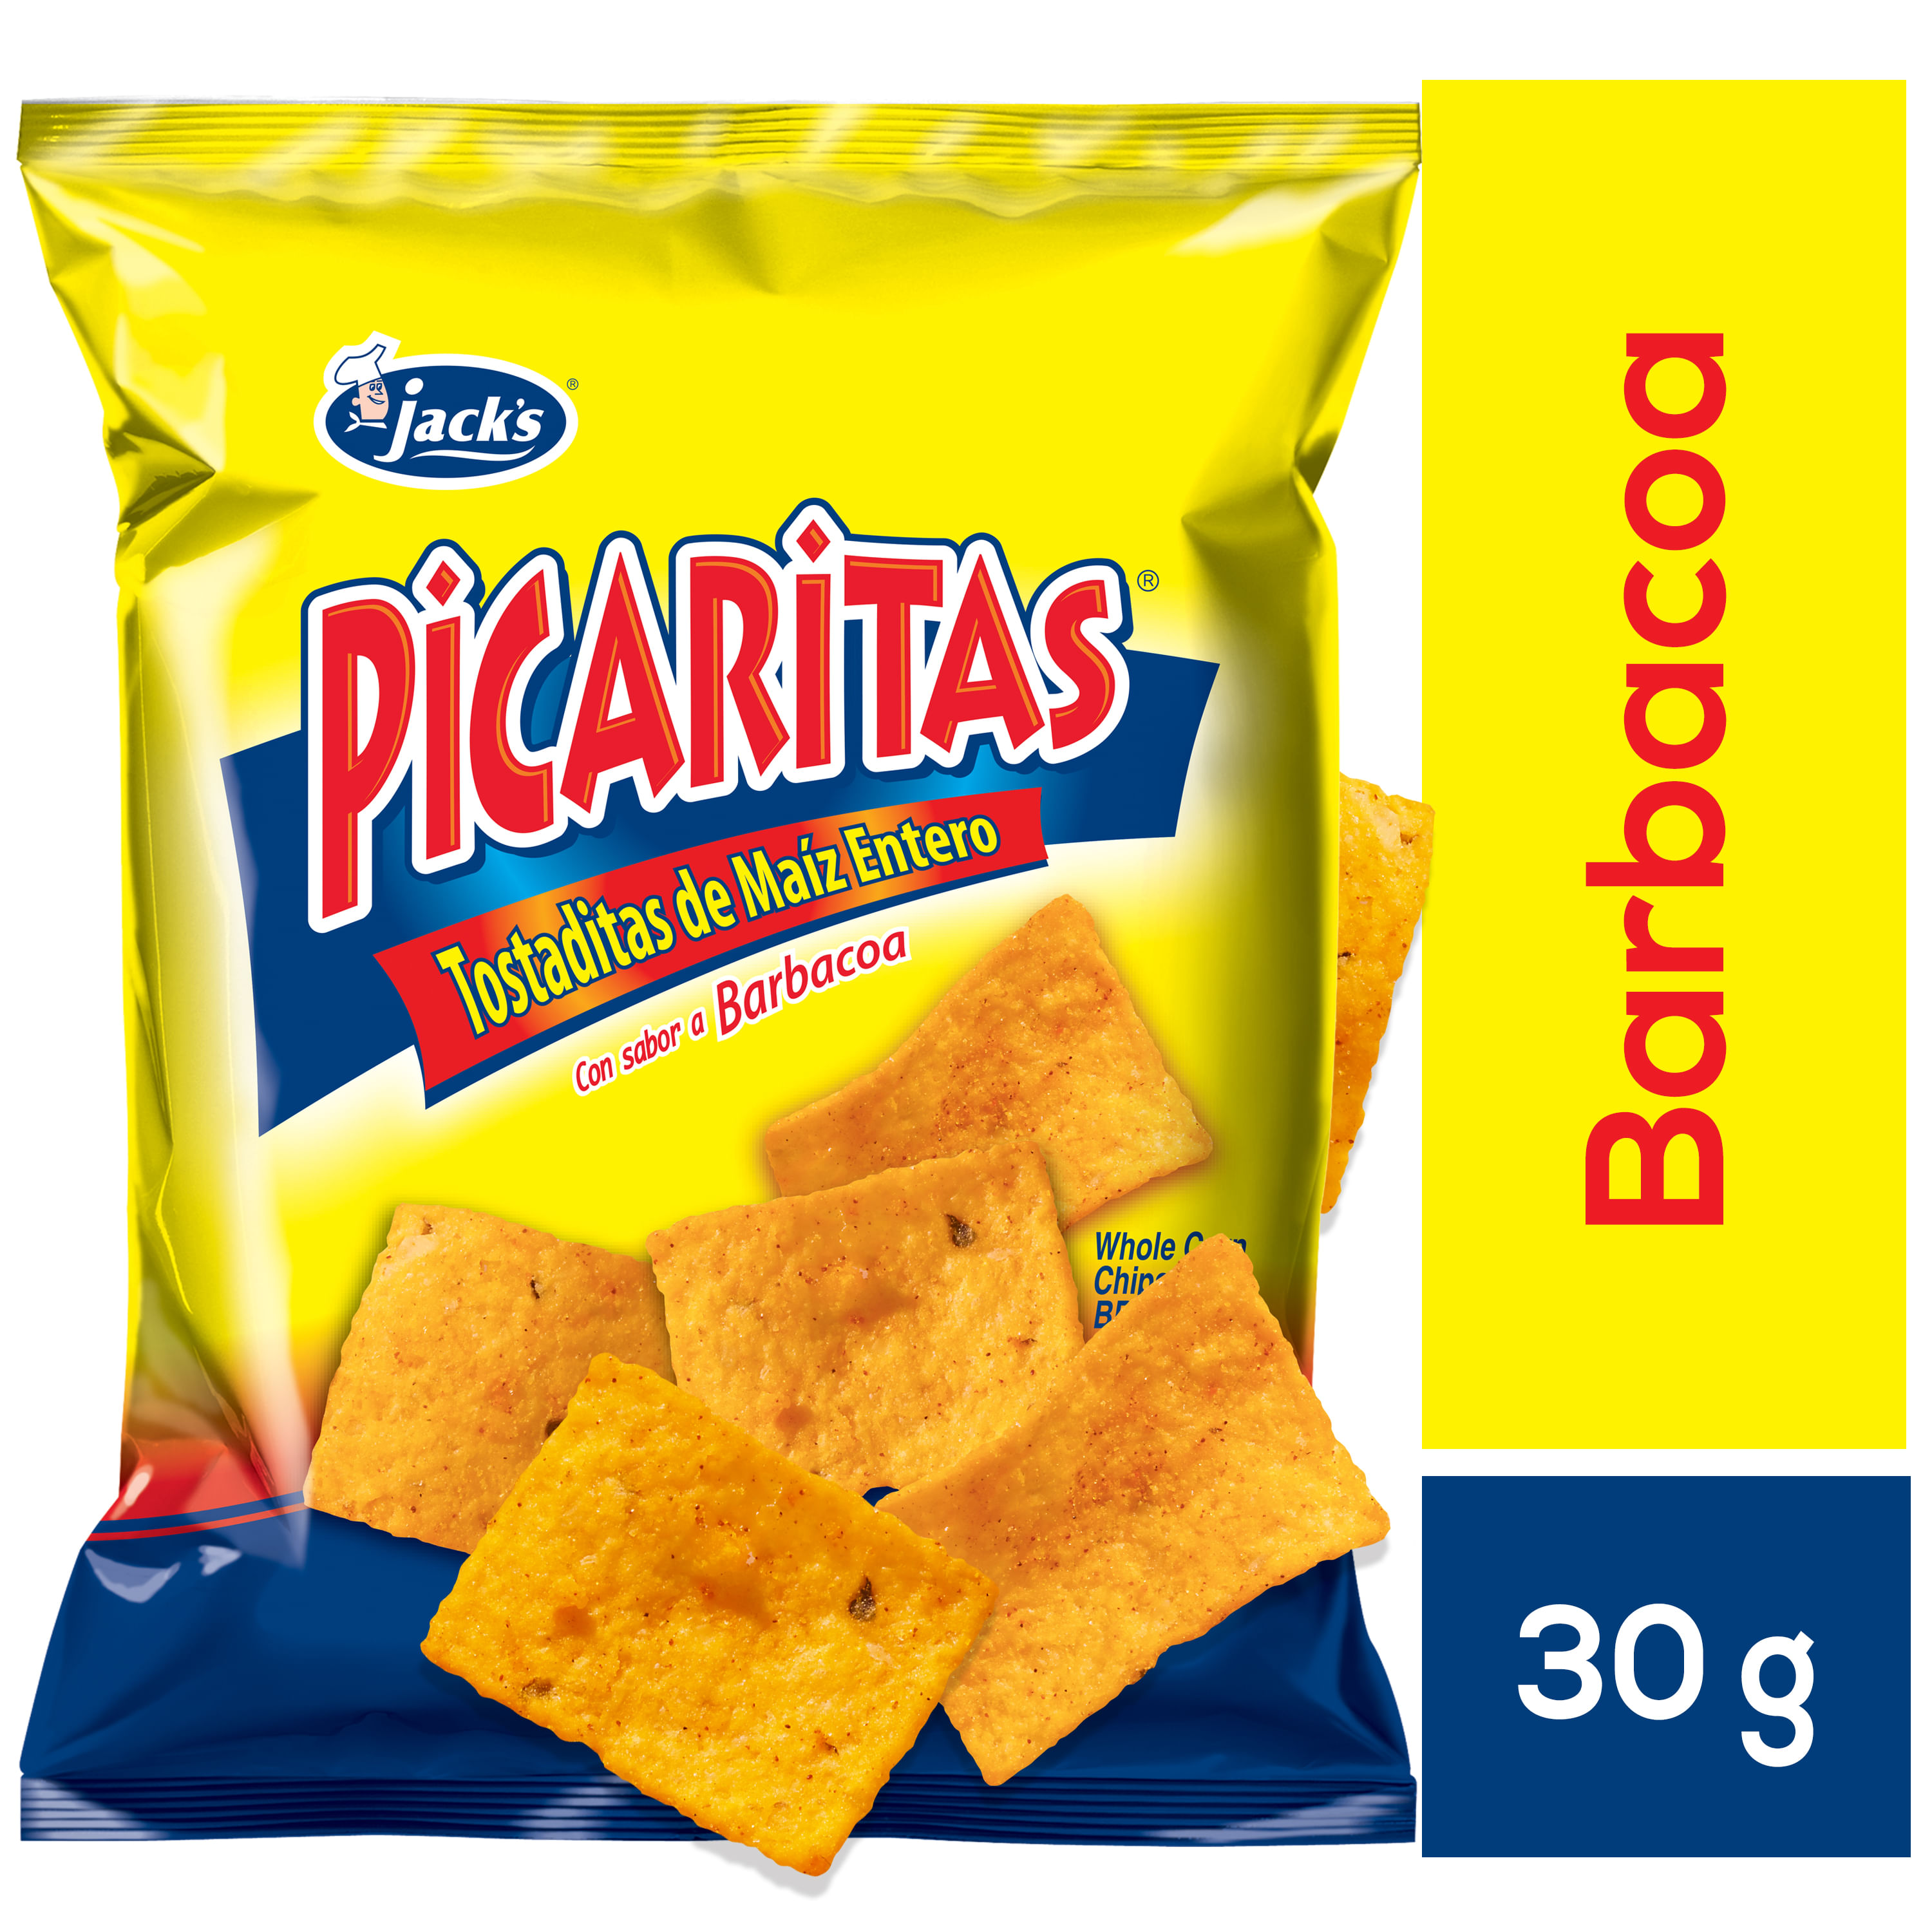 Snack-Picaritas-Barbacoa-Jacks-30Gr-1-30559